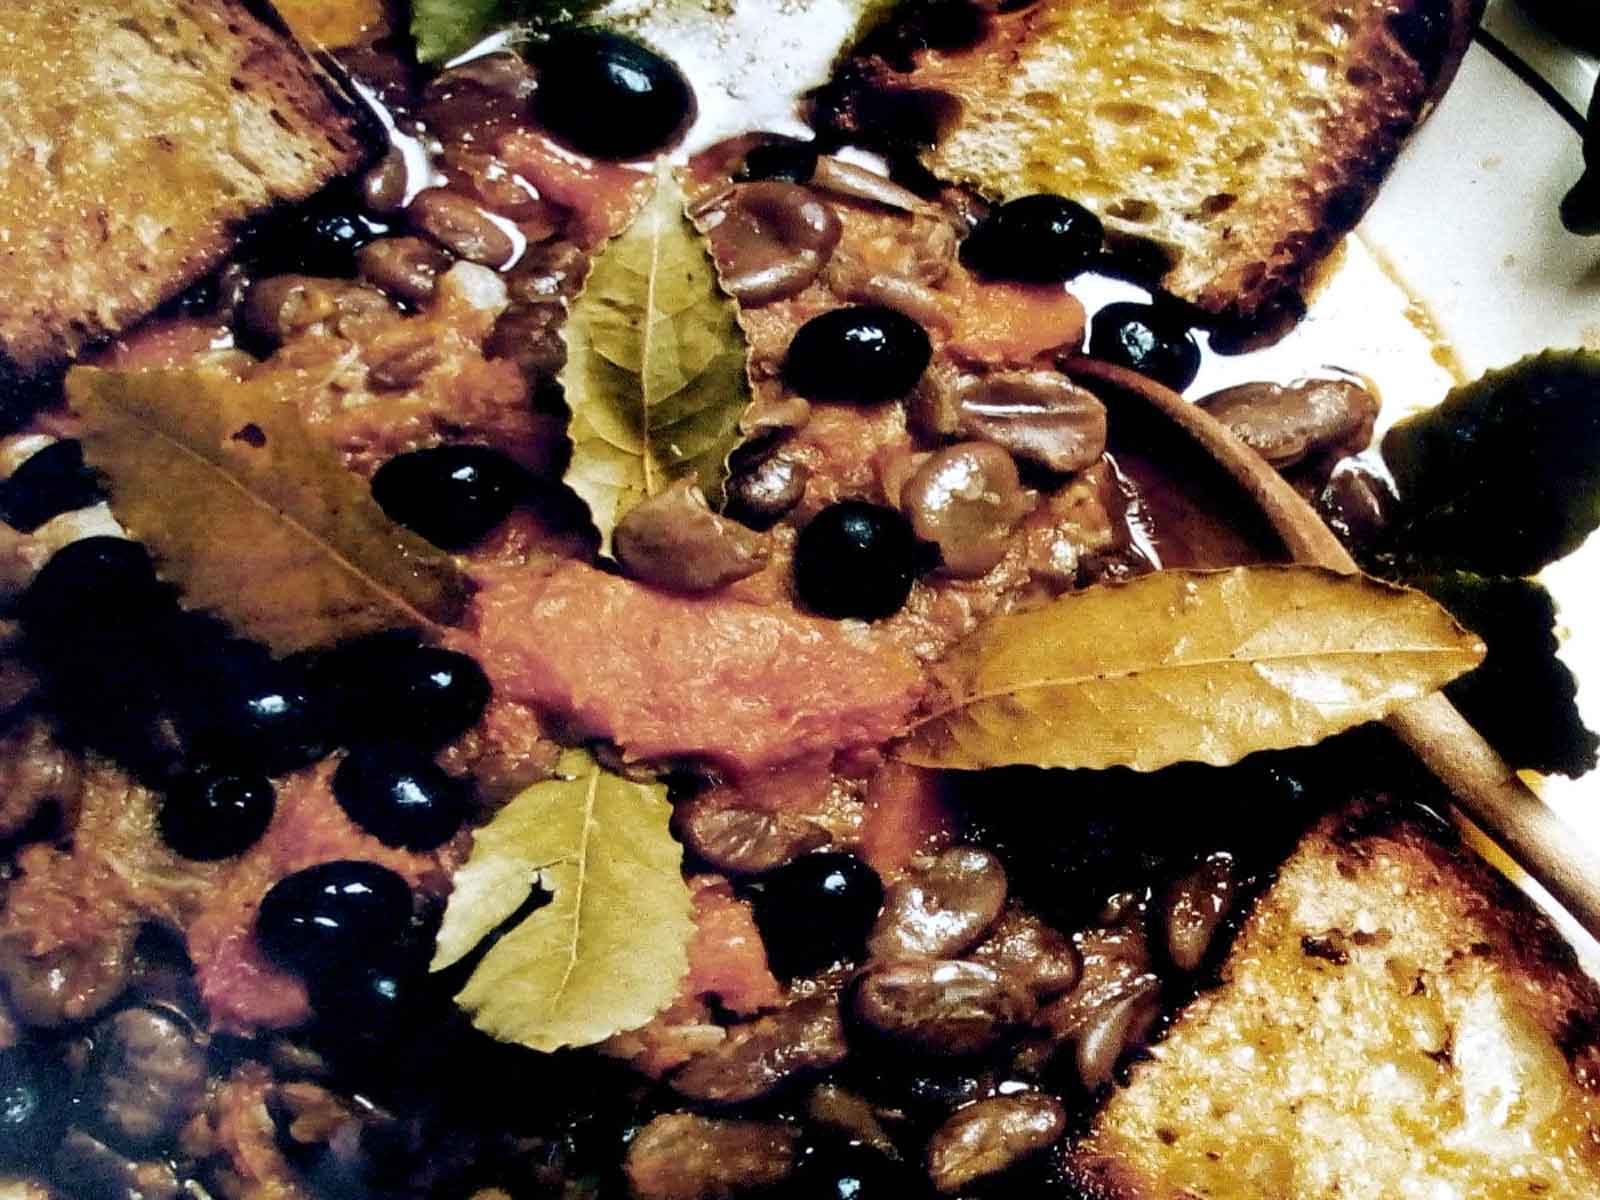 Fave e zucca condite con olive e olio extra vergine di Vieste